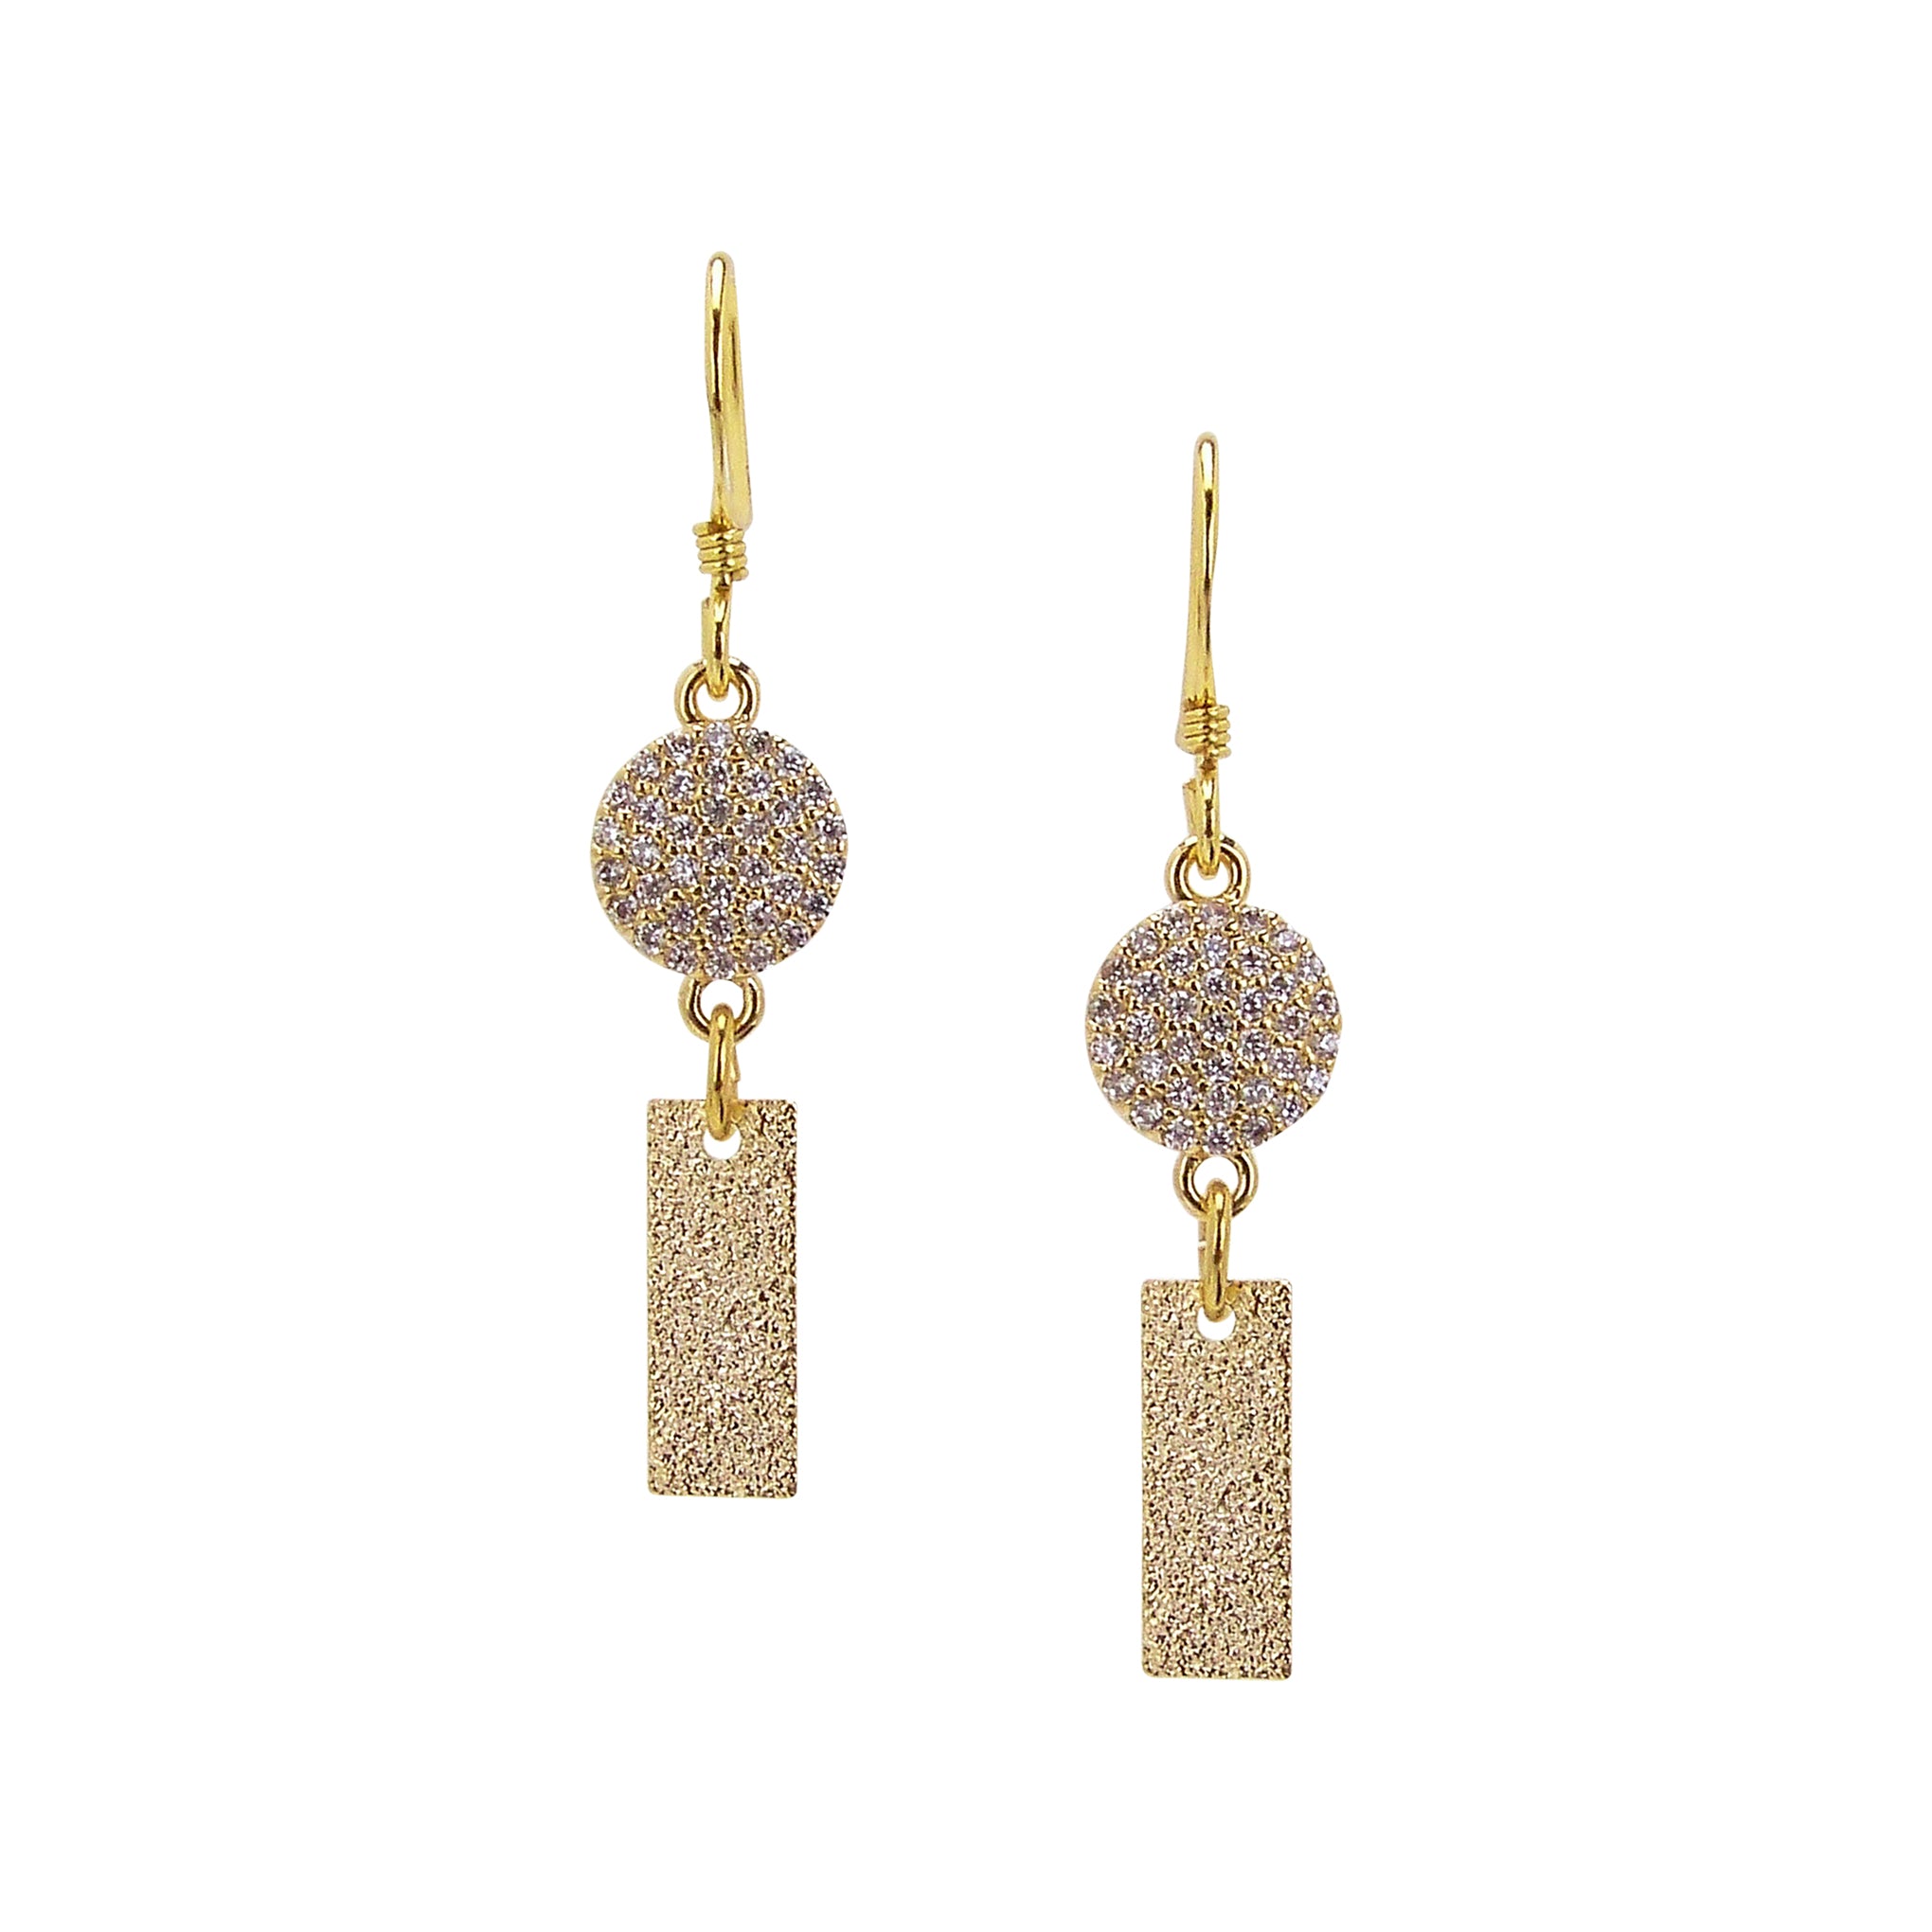 Charlene K Dangle Bar and Circle Charm Earrings in Gold Vermeil